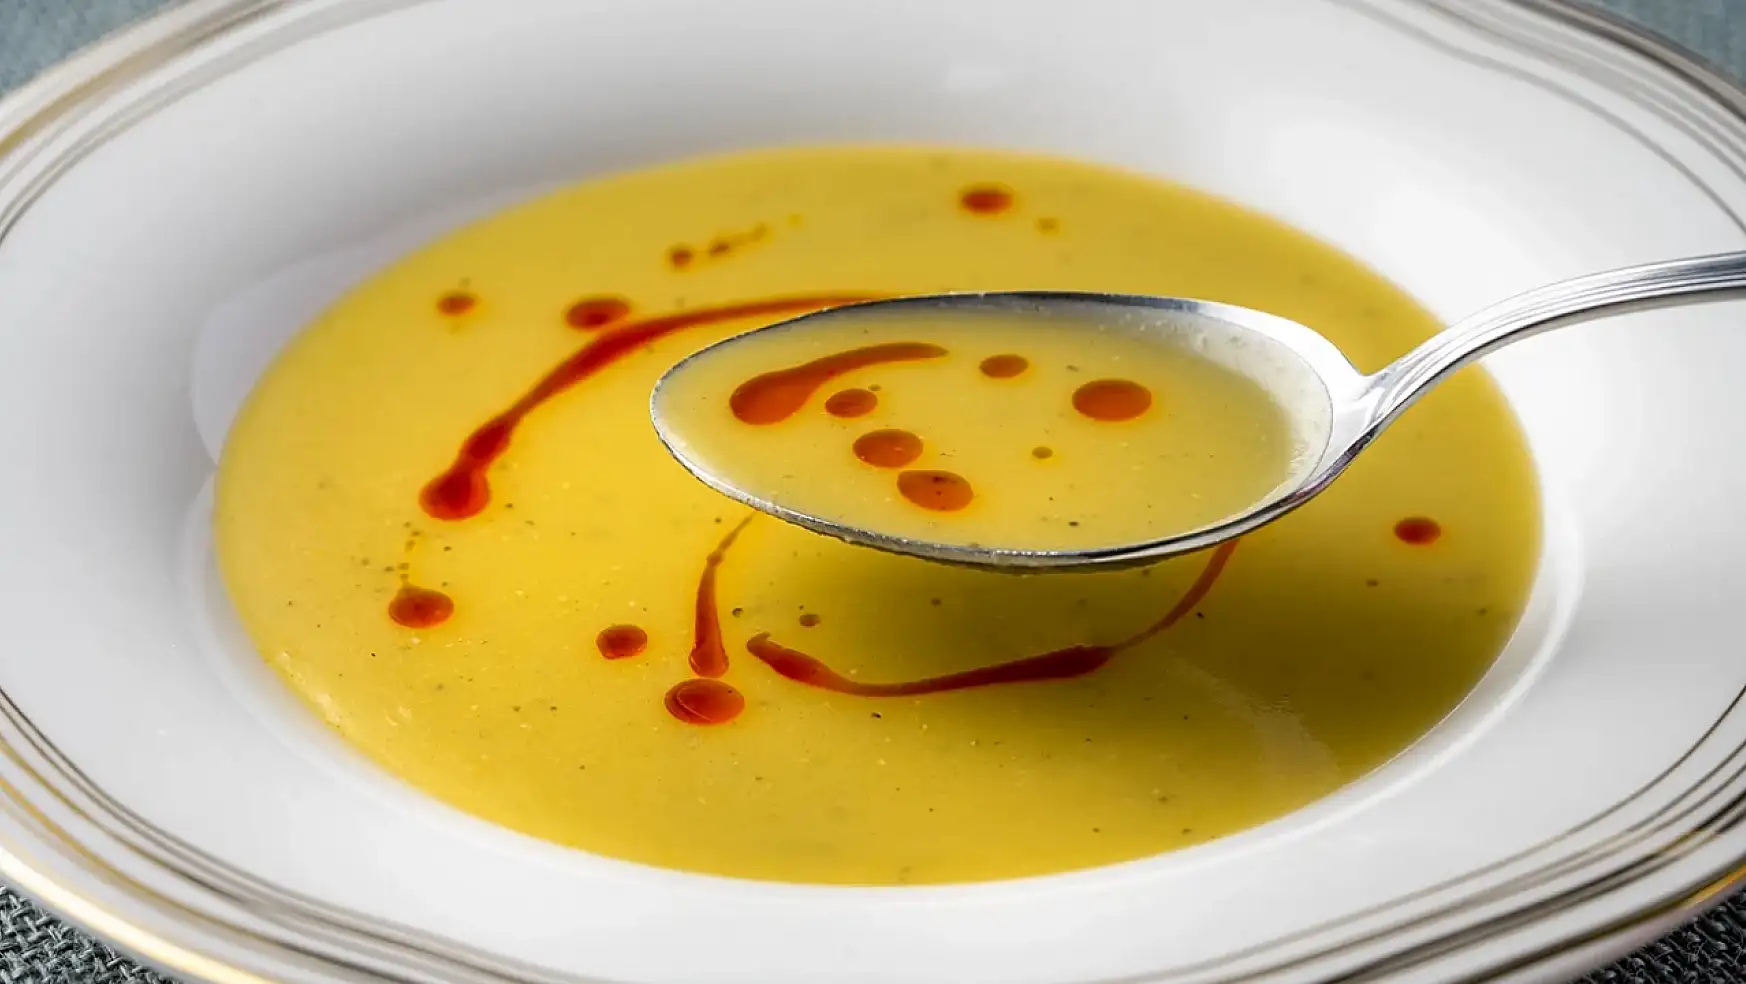 Kolay ve lezzetli mercimek çorbası tarifi: Adım adım hazırlanışı